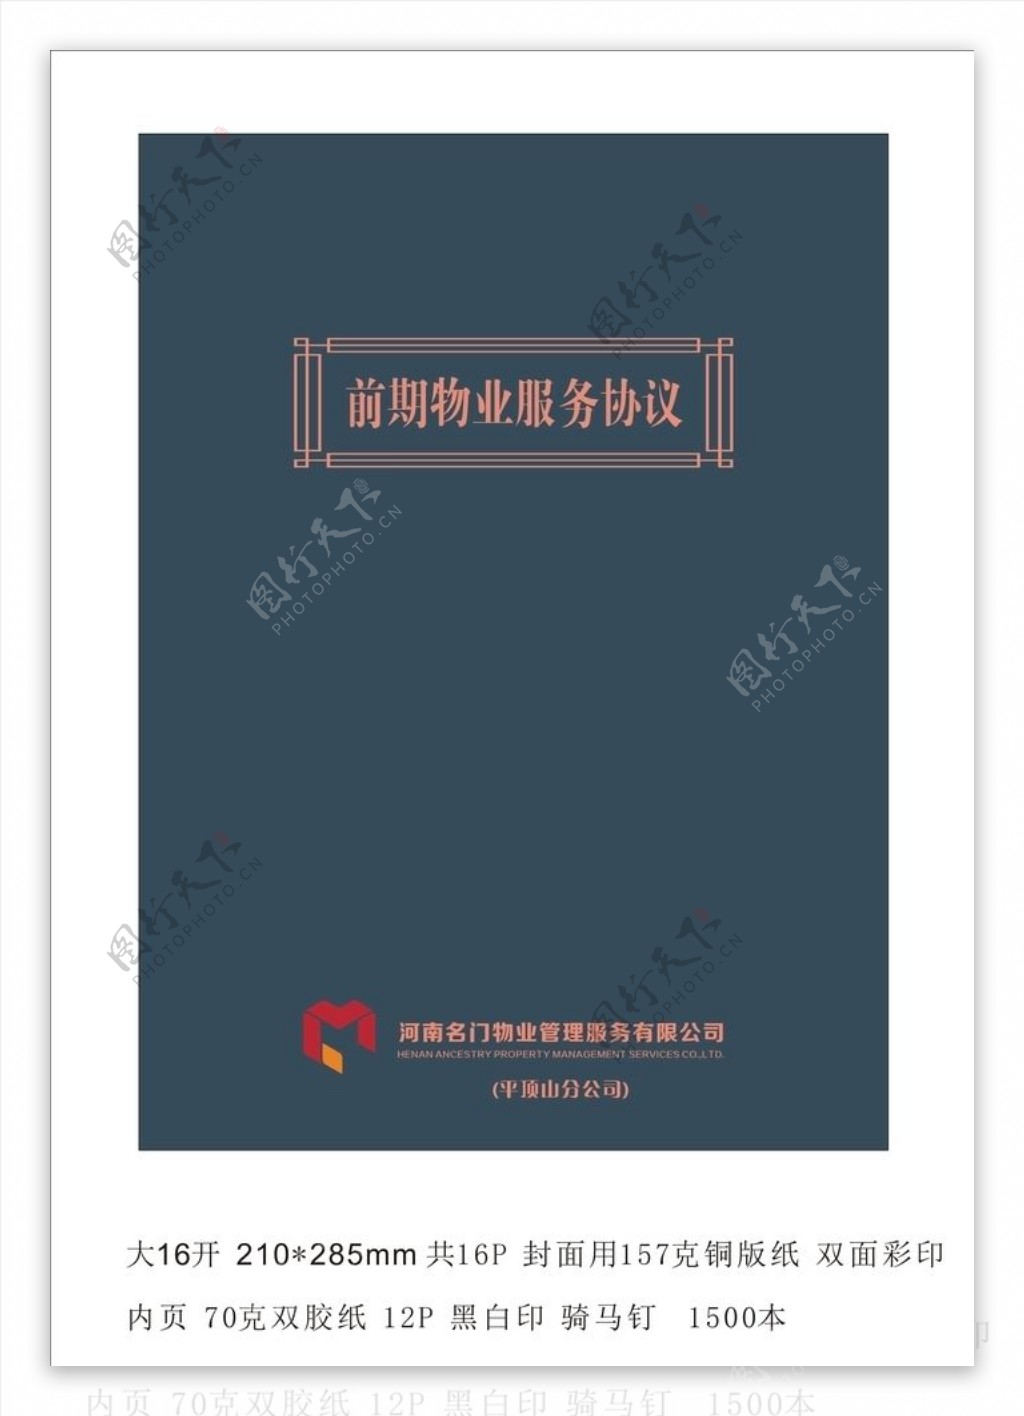 名门世家物业物业服务协议封面图片